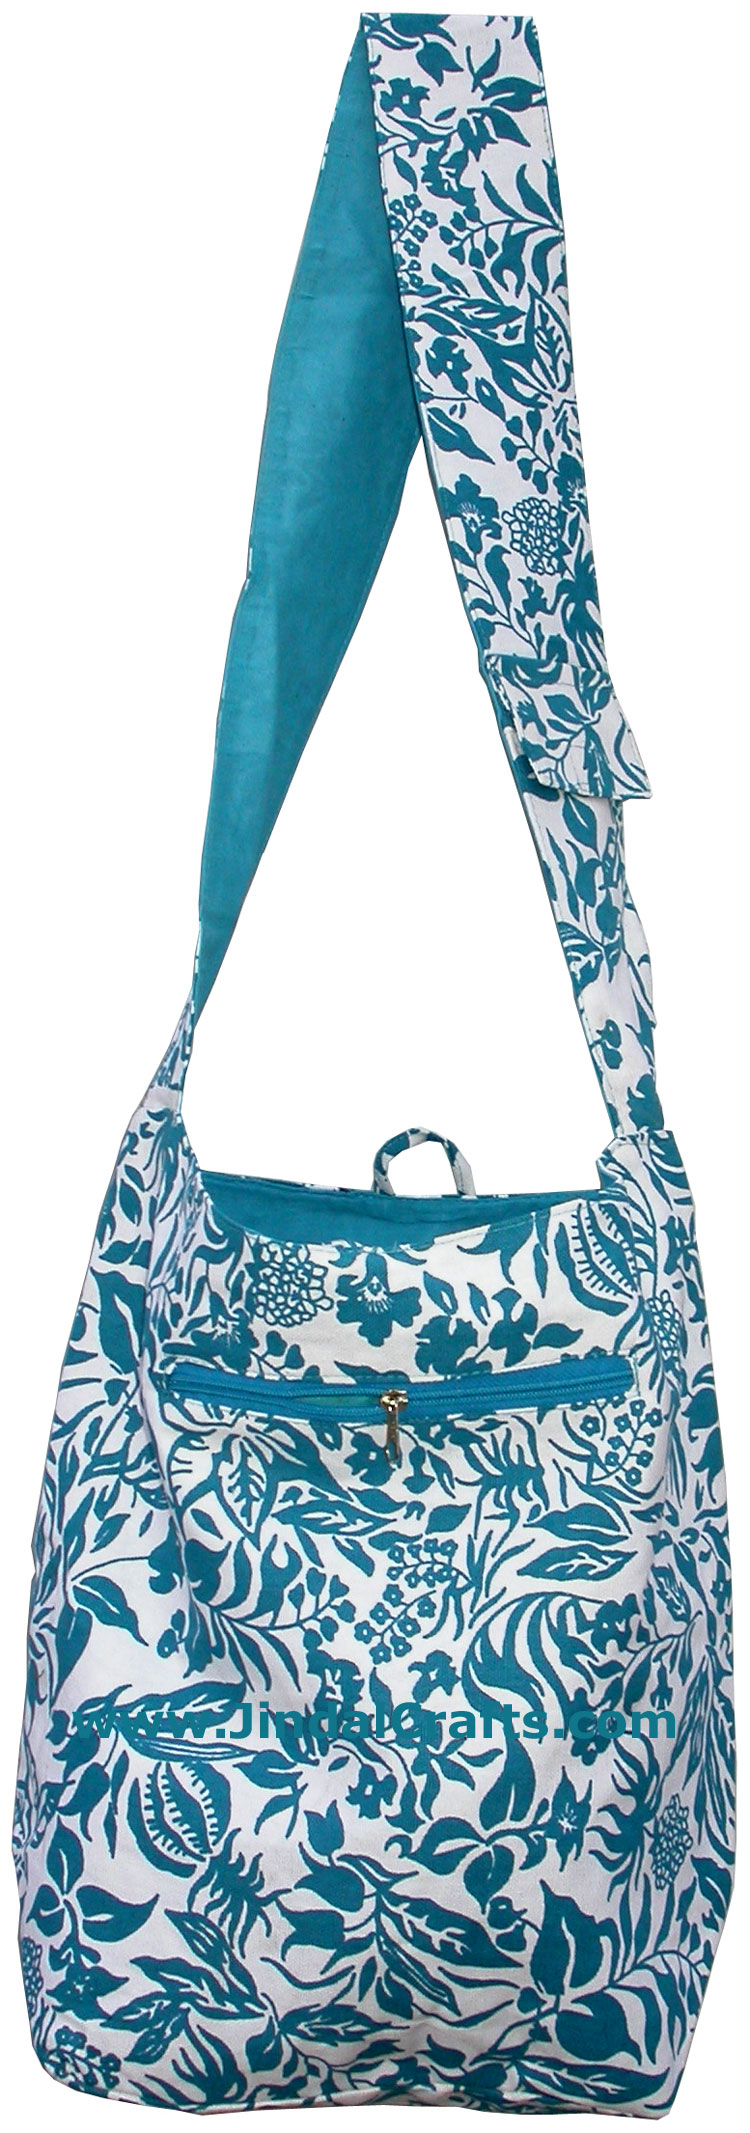 Designer Colorful Shoulder Bag Eco Friendly Printed